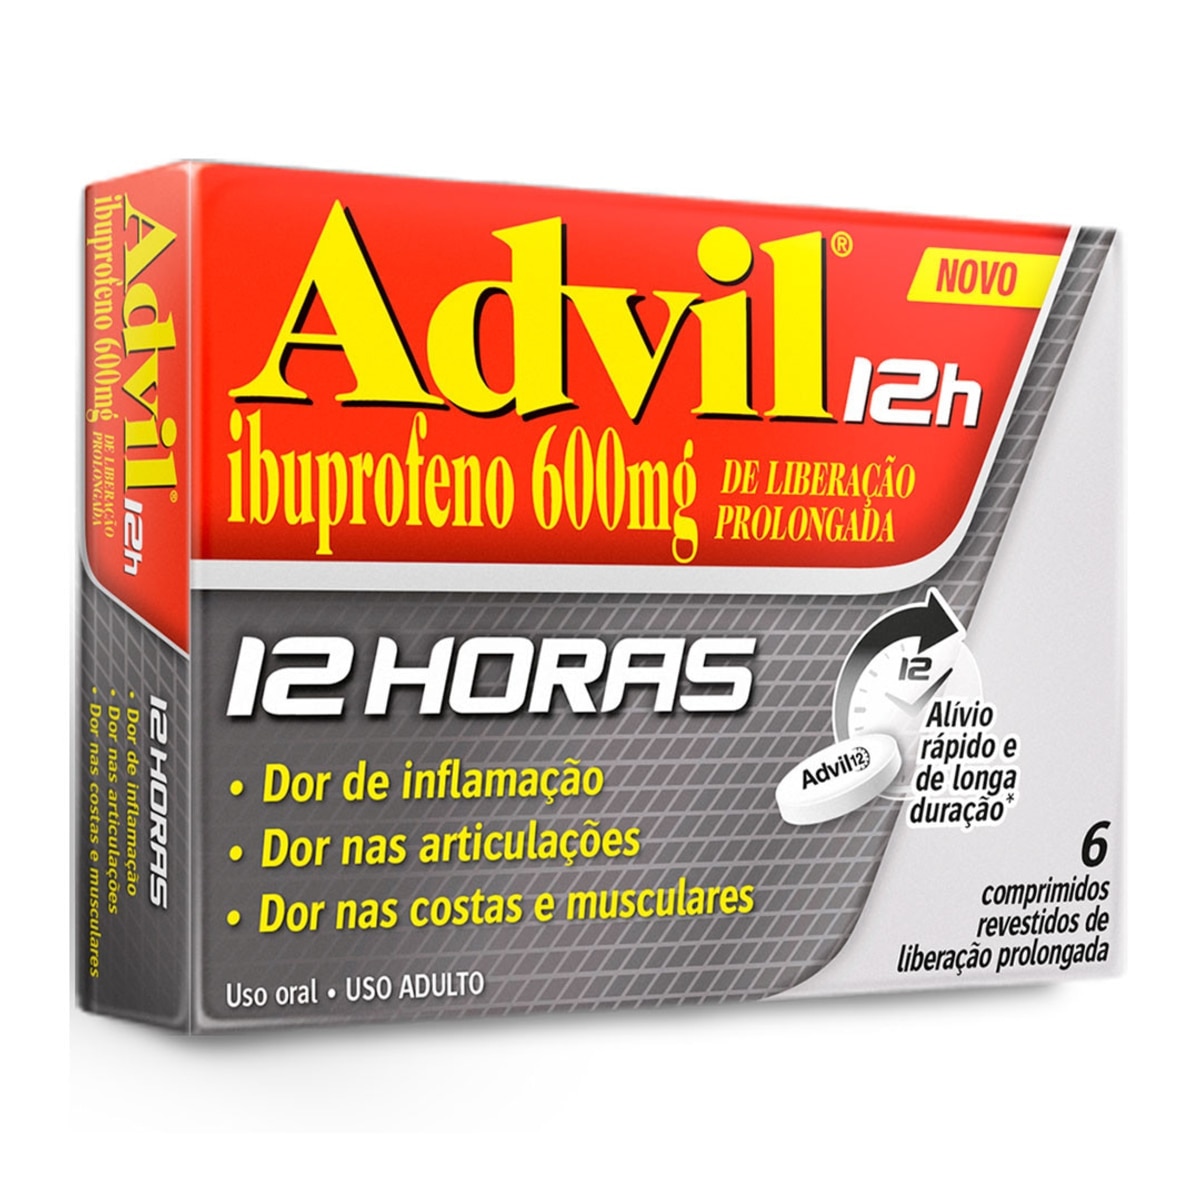 Advil 12 Horas 600mg 6 Comprimidos Revestidos